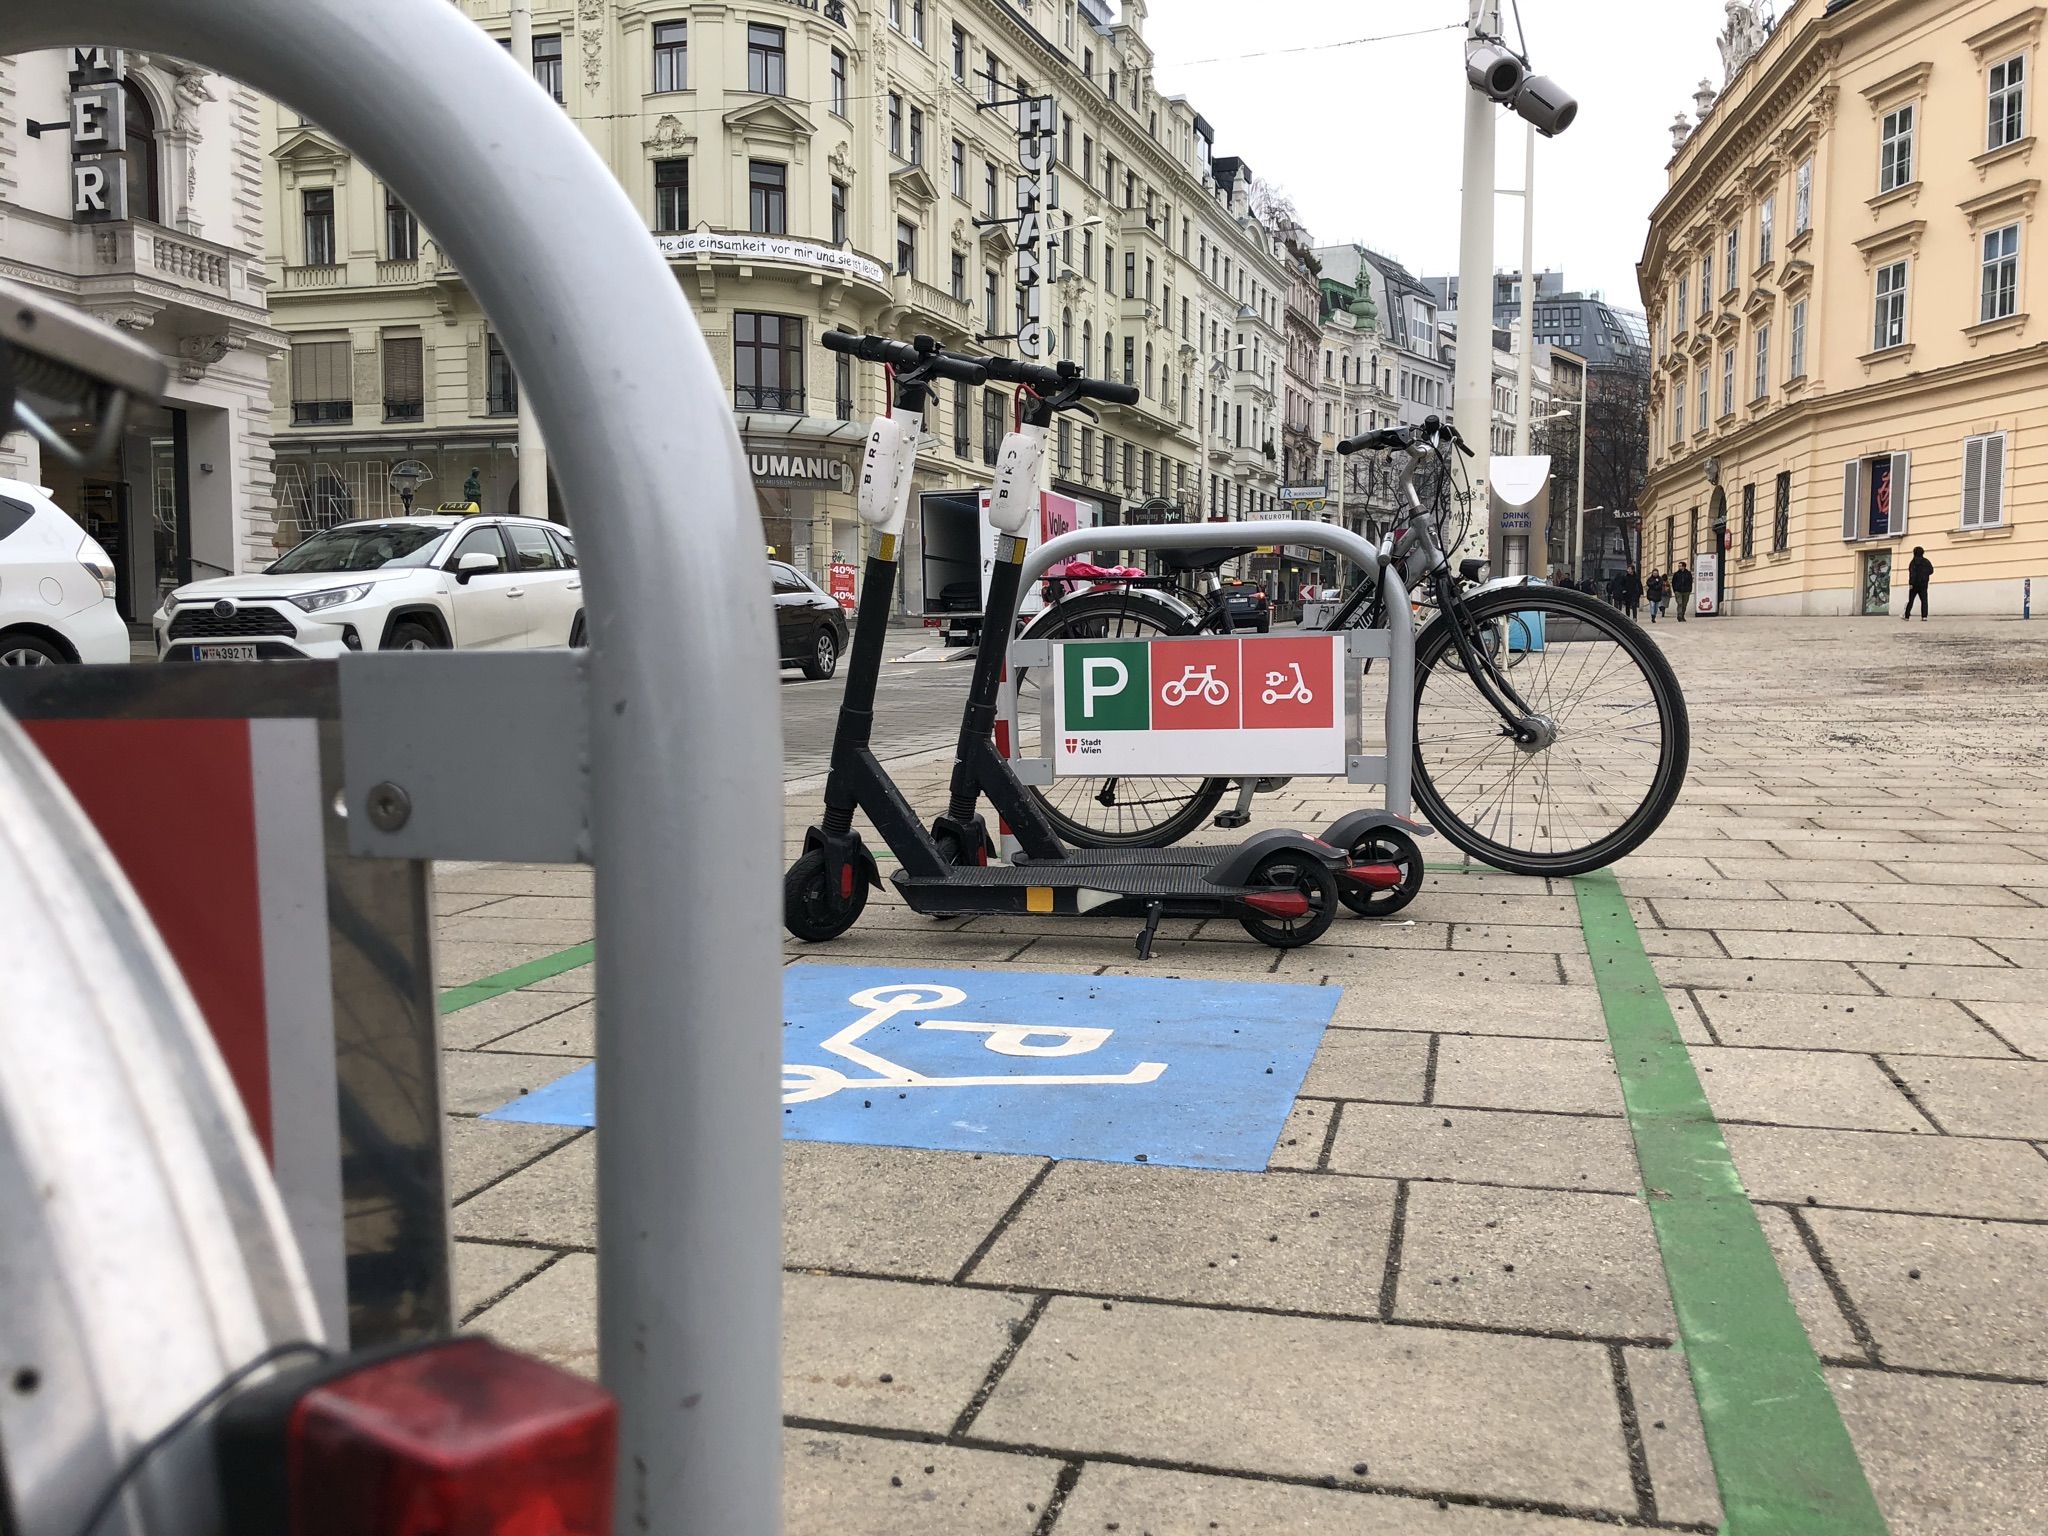 Am Beginn der Mariahilfer Straße ist ein Abstellplatz für e-Scooter markiert. Er ist durch zwei Radbügel begrenzt. An den Bügeln parken Fahrrädern, am Abstellplatz zwei e-Scooter.